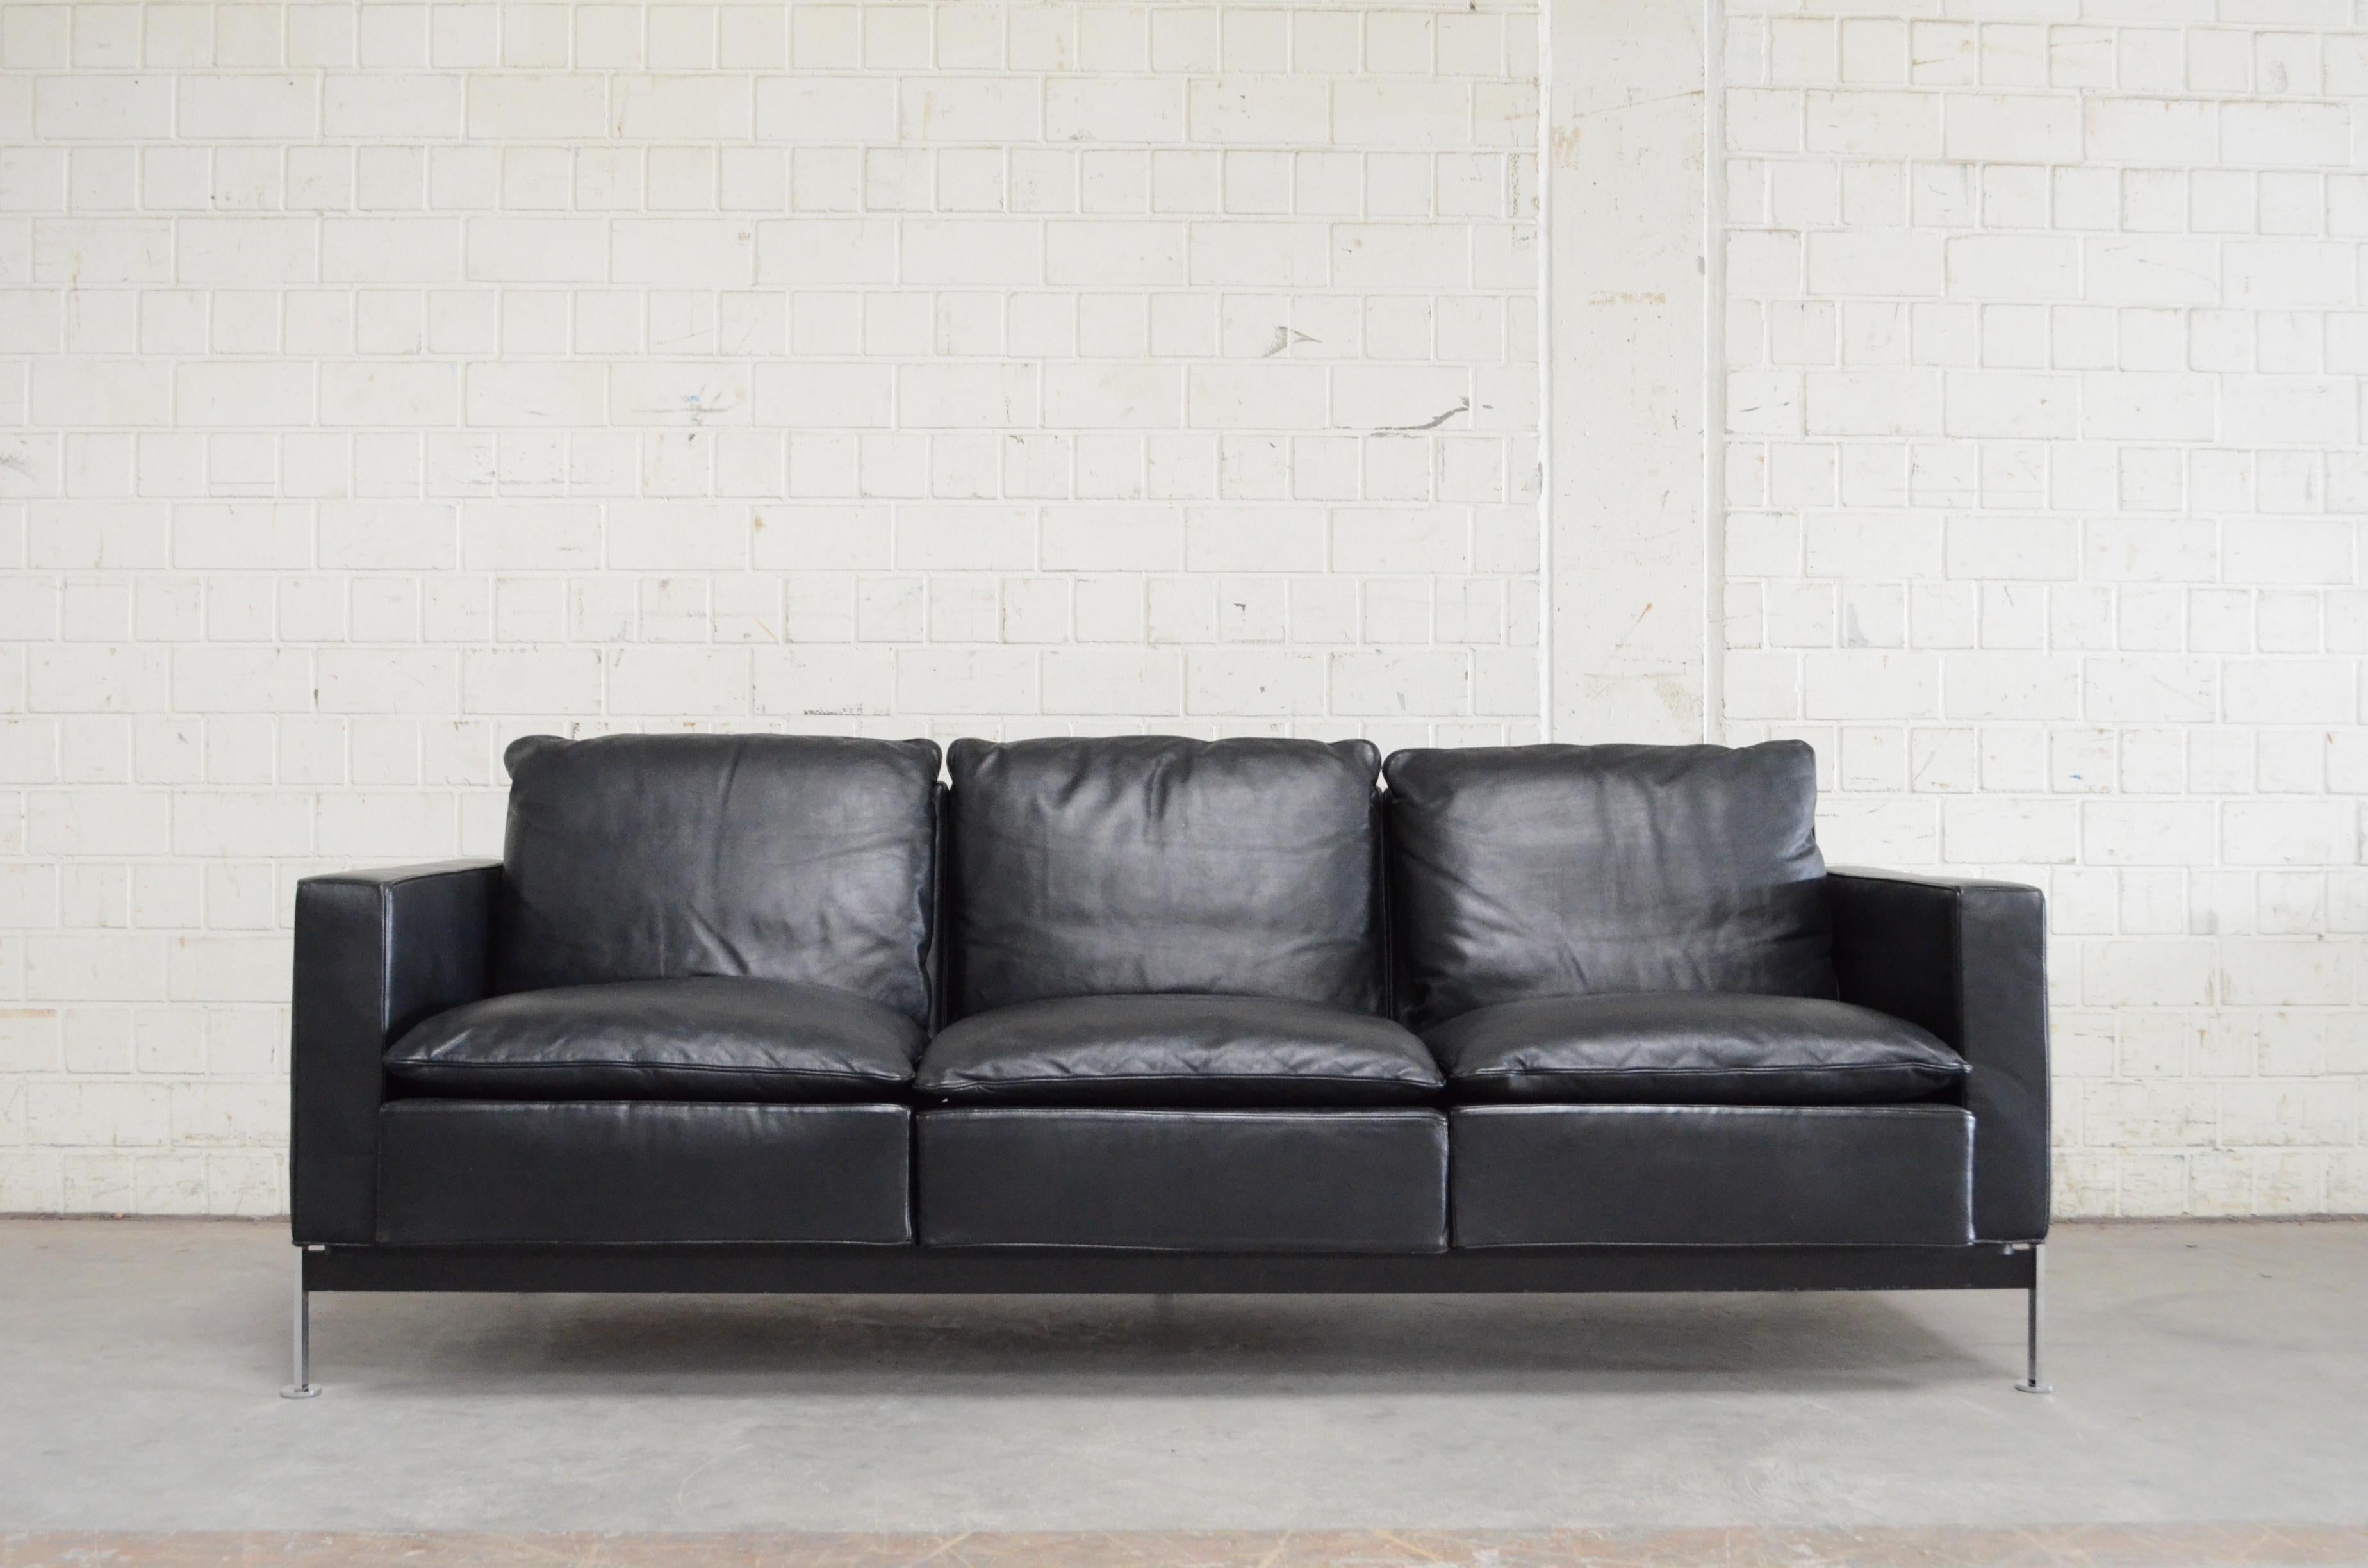 Robert Haussmann RH 302 3-sitziges Sofa, hergestellt von Hans Kaufeld.
Dieses Sofa ist die erste frühe Produktion für Hans Kaufeld.
Später wurde es von De Sede hergestellt.
Sehen Sie sich einfach das Label von Ernst Ries & Sohn in Deutschland